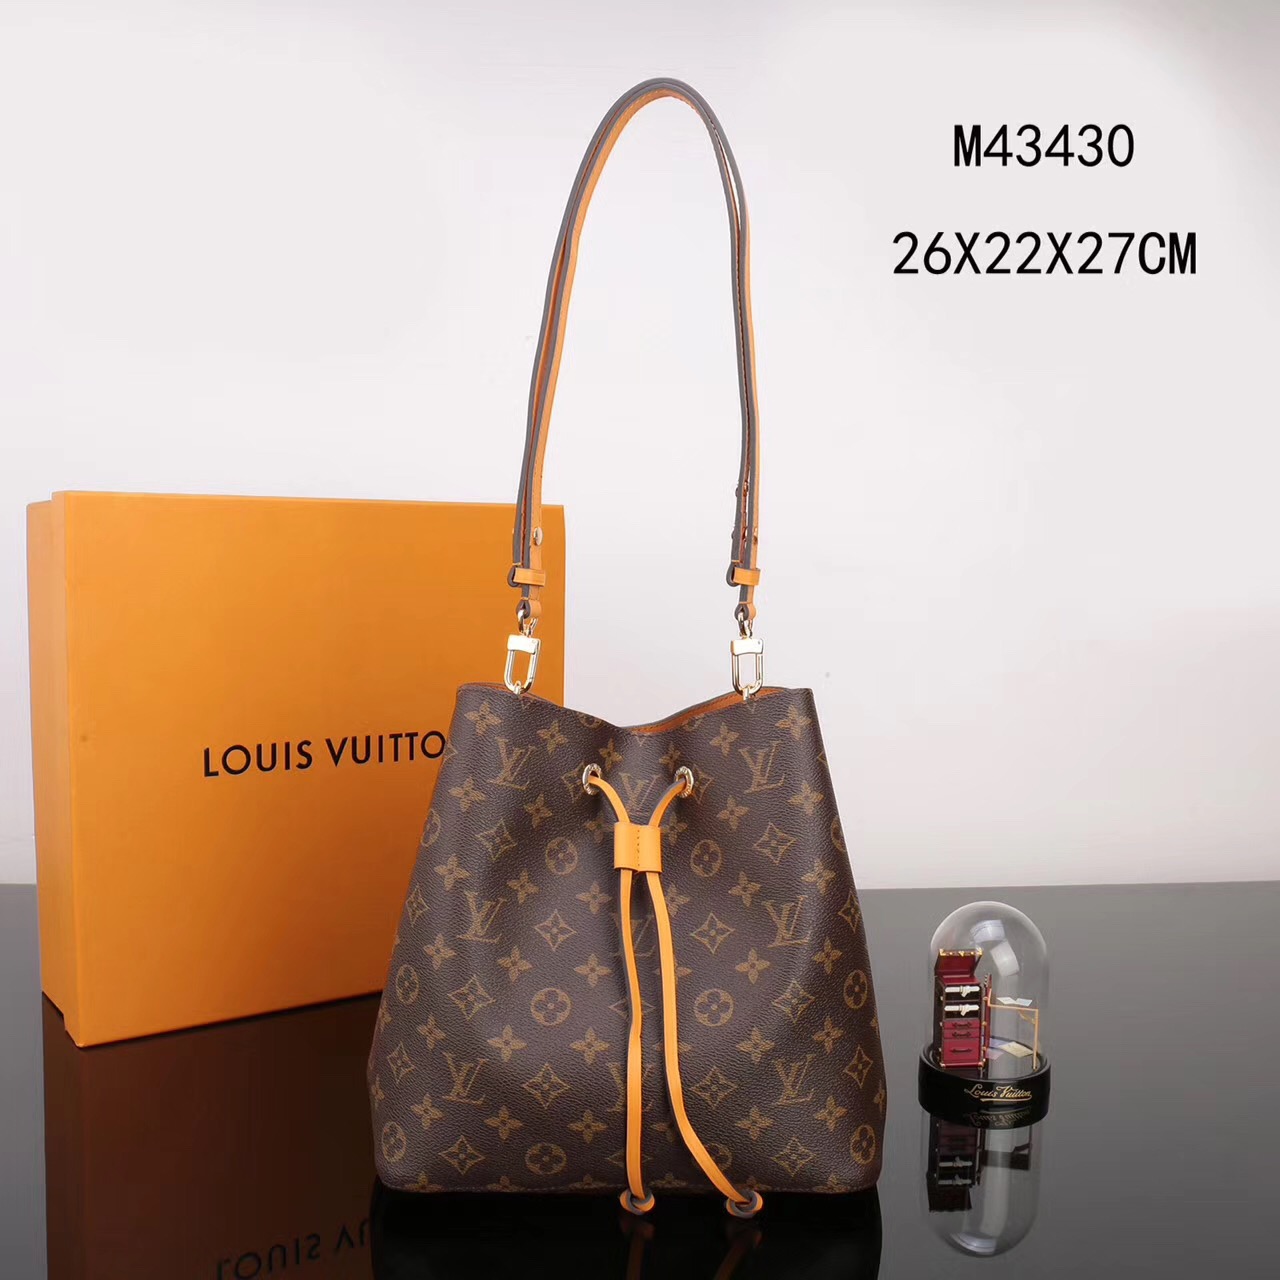 LV Louis Vuitton M43430 bags Monogram NEONOE Handbags Orange